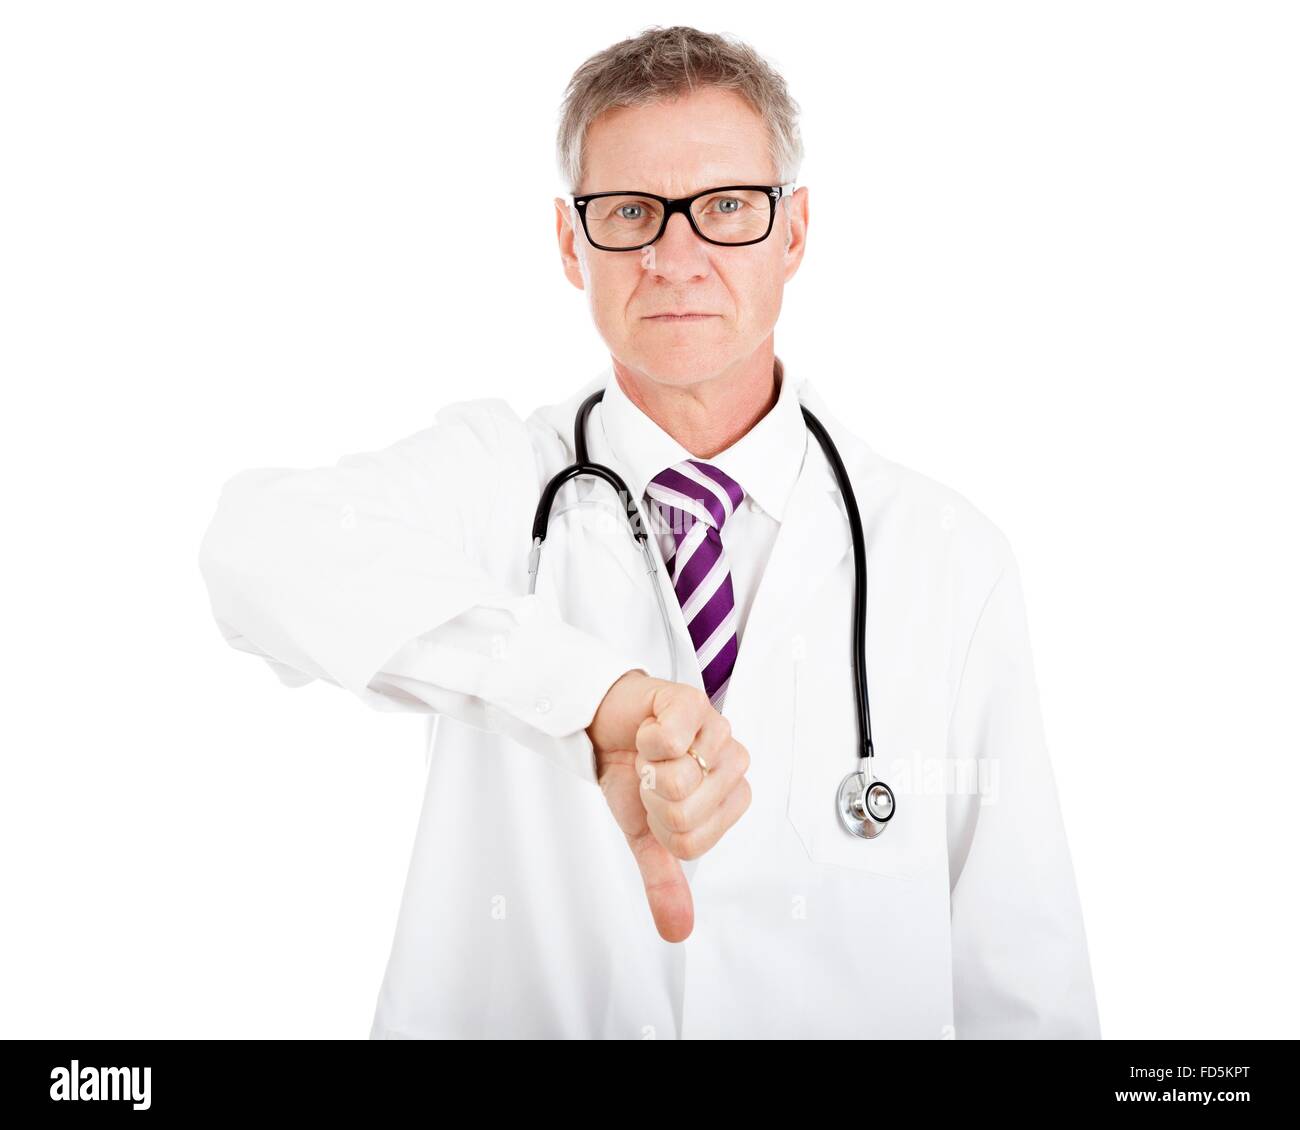 Schweren männlichen Arzt geben Daumen runter-Zeichen, zeigt Fehler beim Ergebnis des Vorgangs, Isolated on White Background Stockfoto